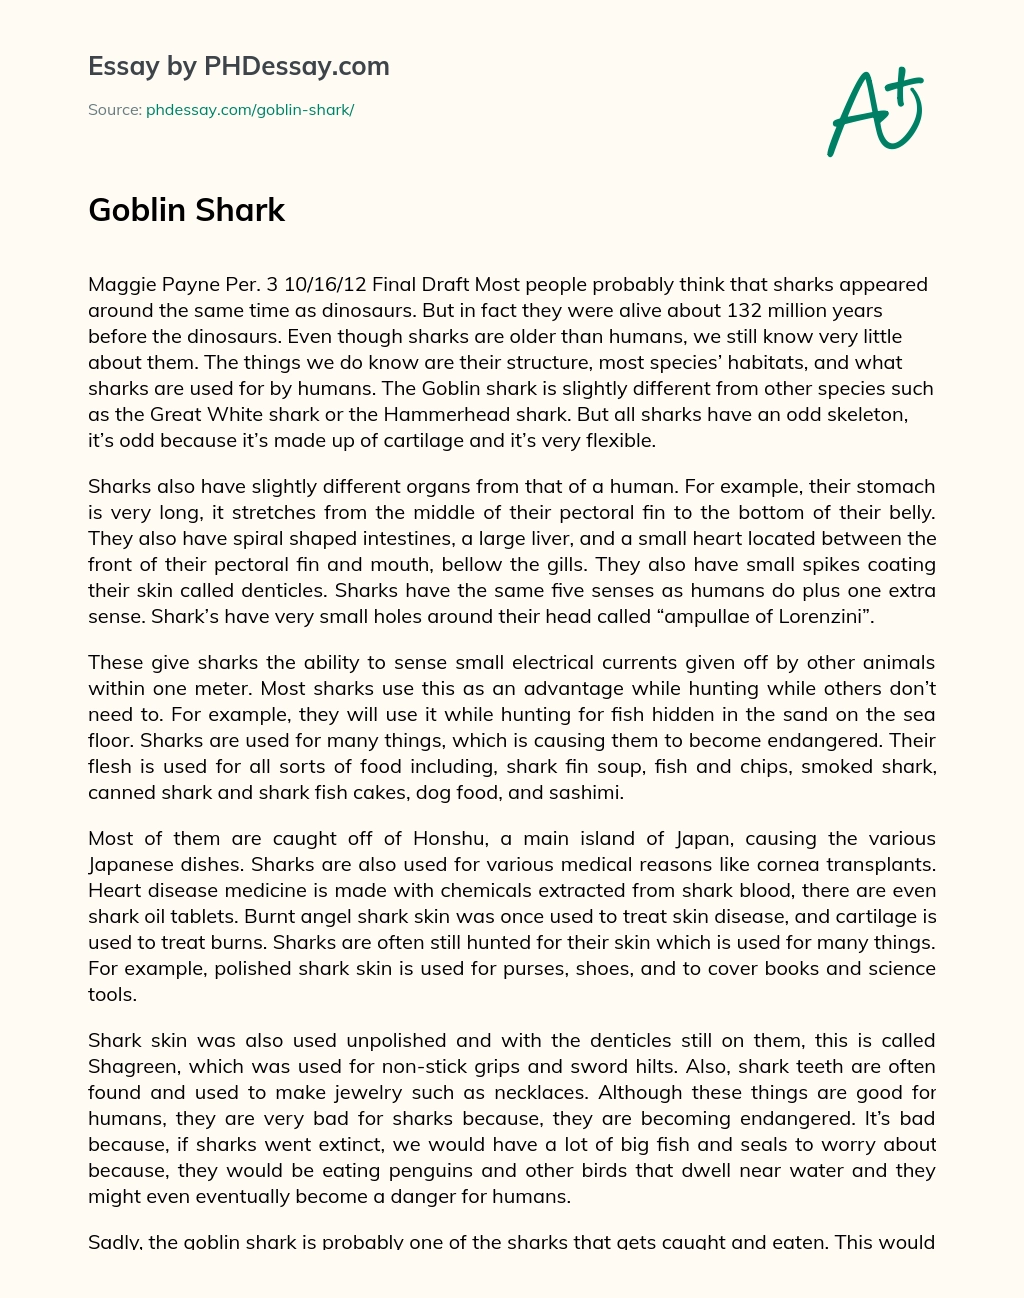 Goblin Shark essay